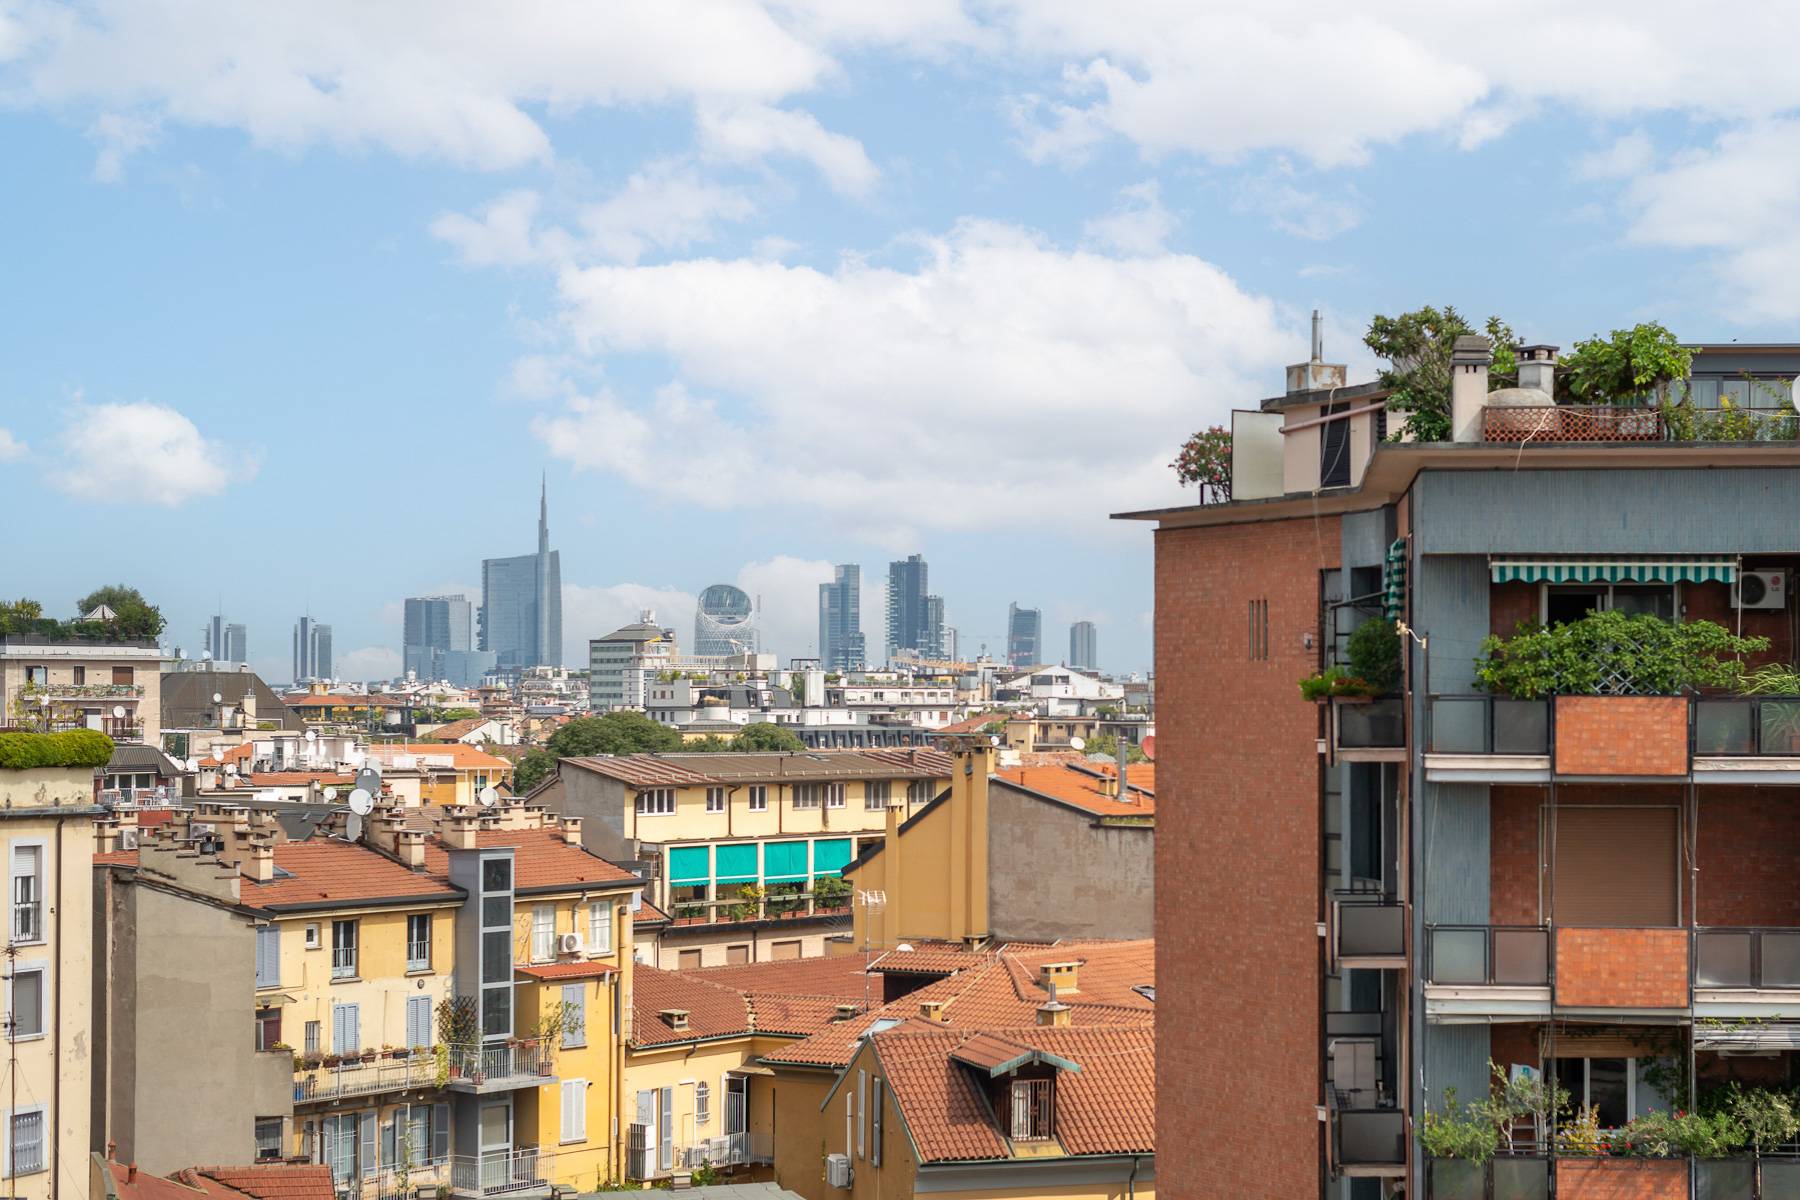 Appartamento in Vendita a Milano: 4 locali, 190 mq - Foto 27